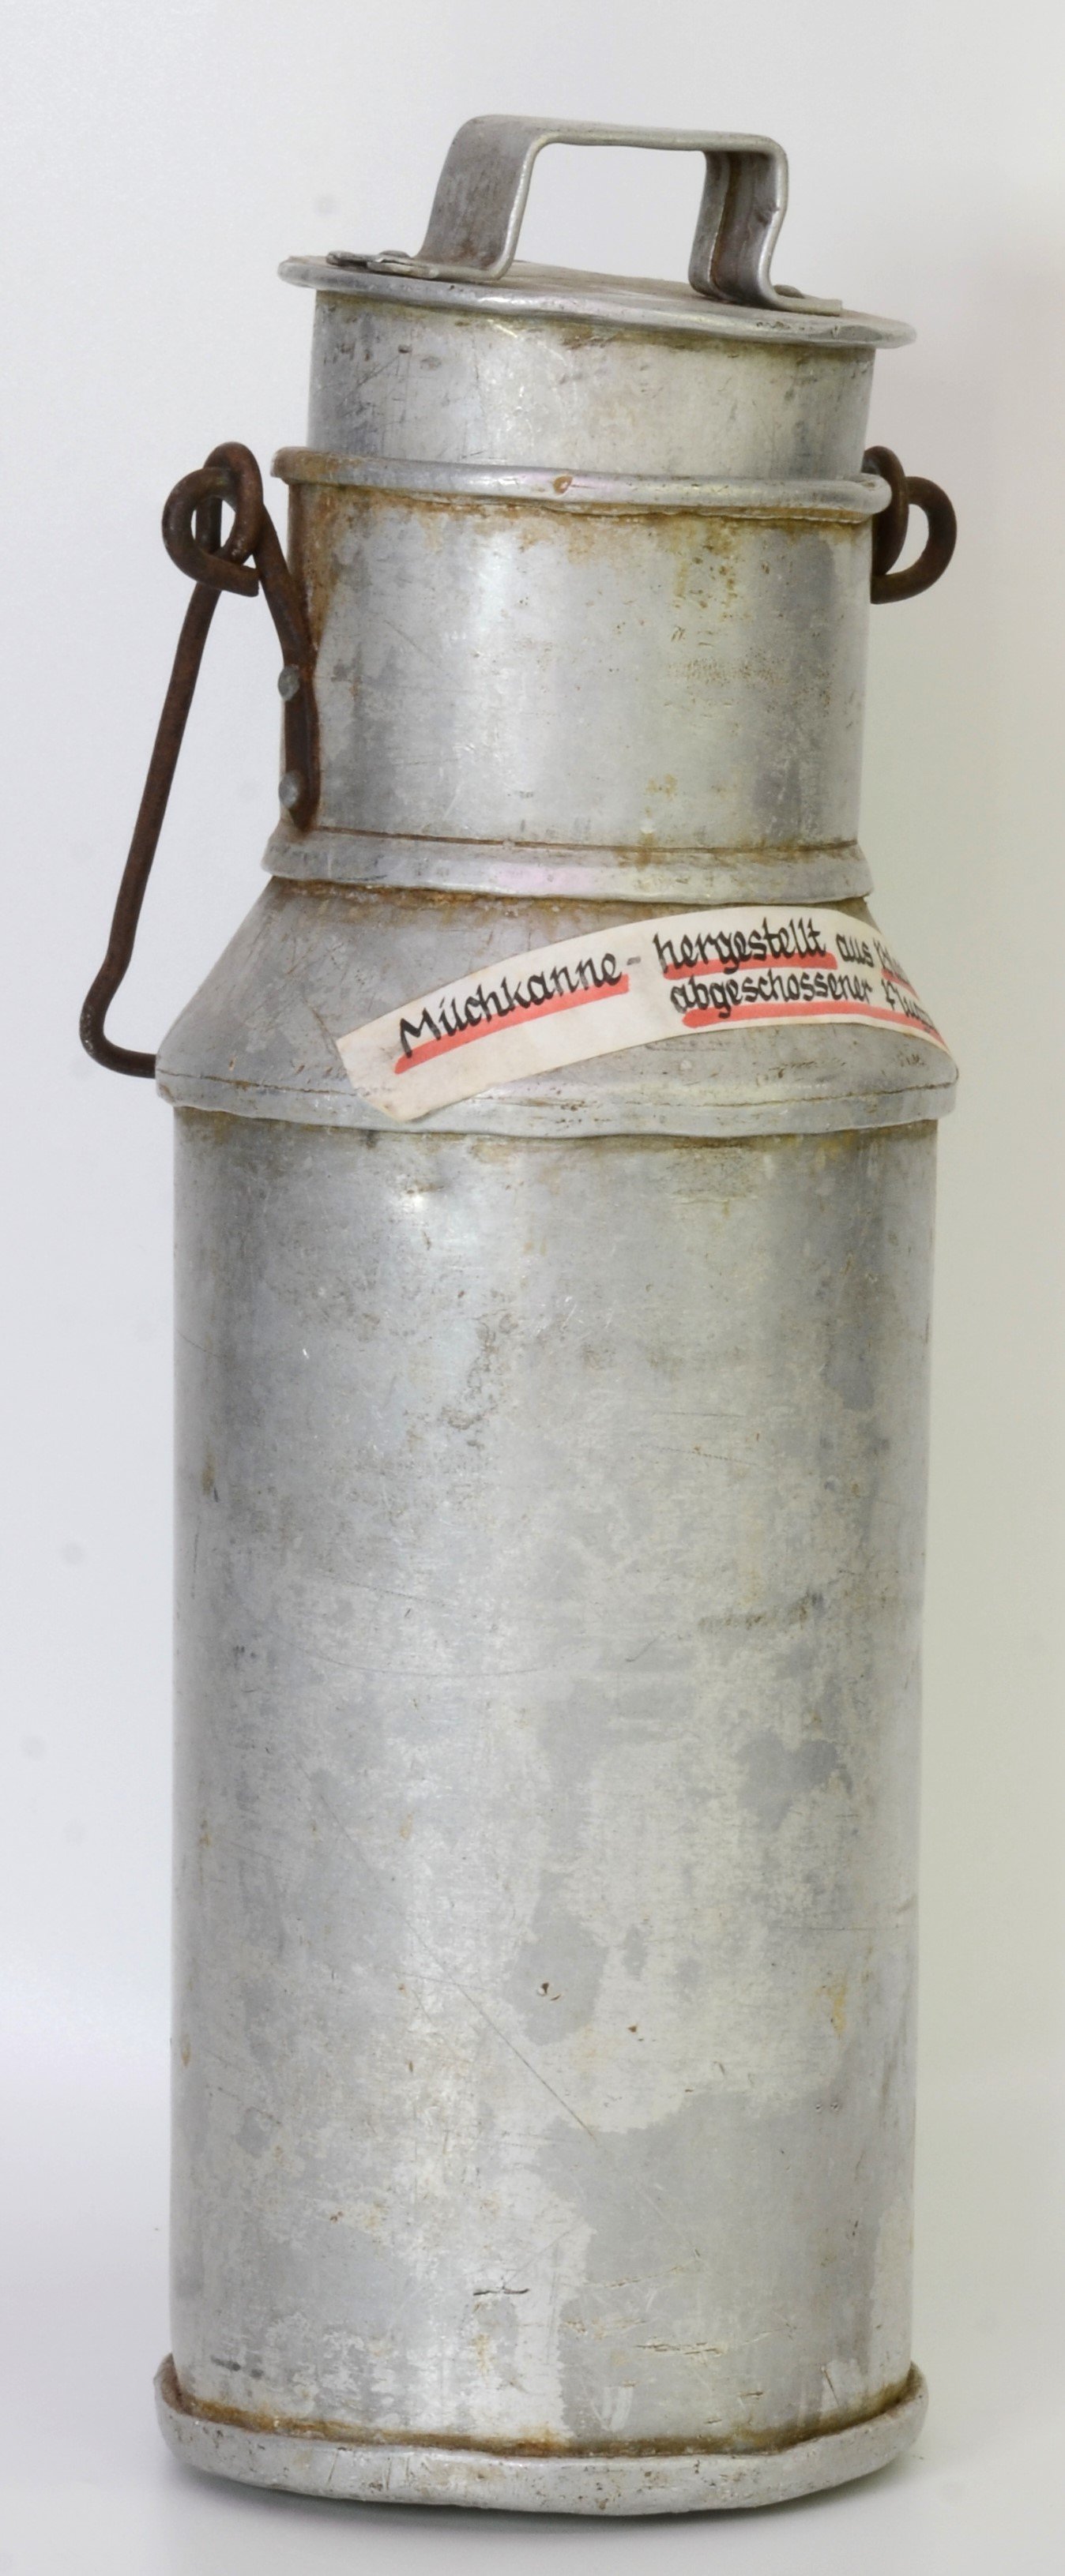 Milchkanne aus Kriegsgerät (DDR Geschichtsmuseum im Dokumentationszentrum Perleberg CC BY-SA)